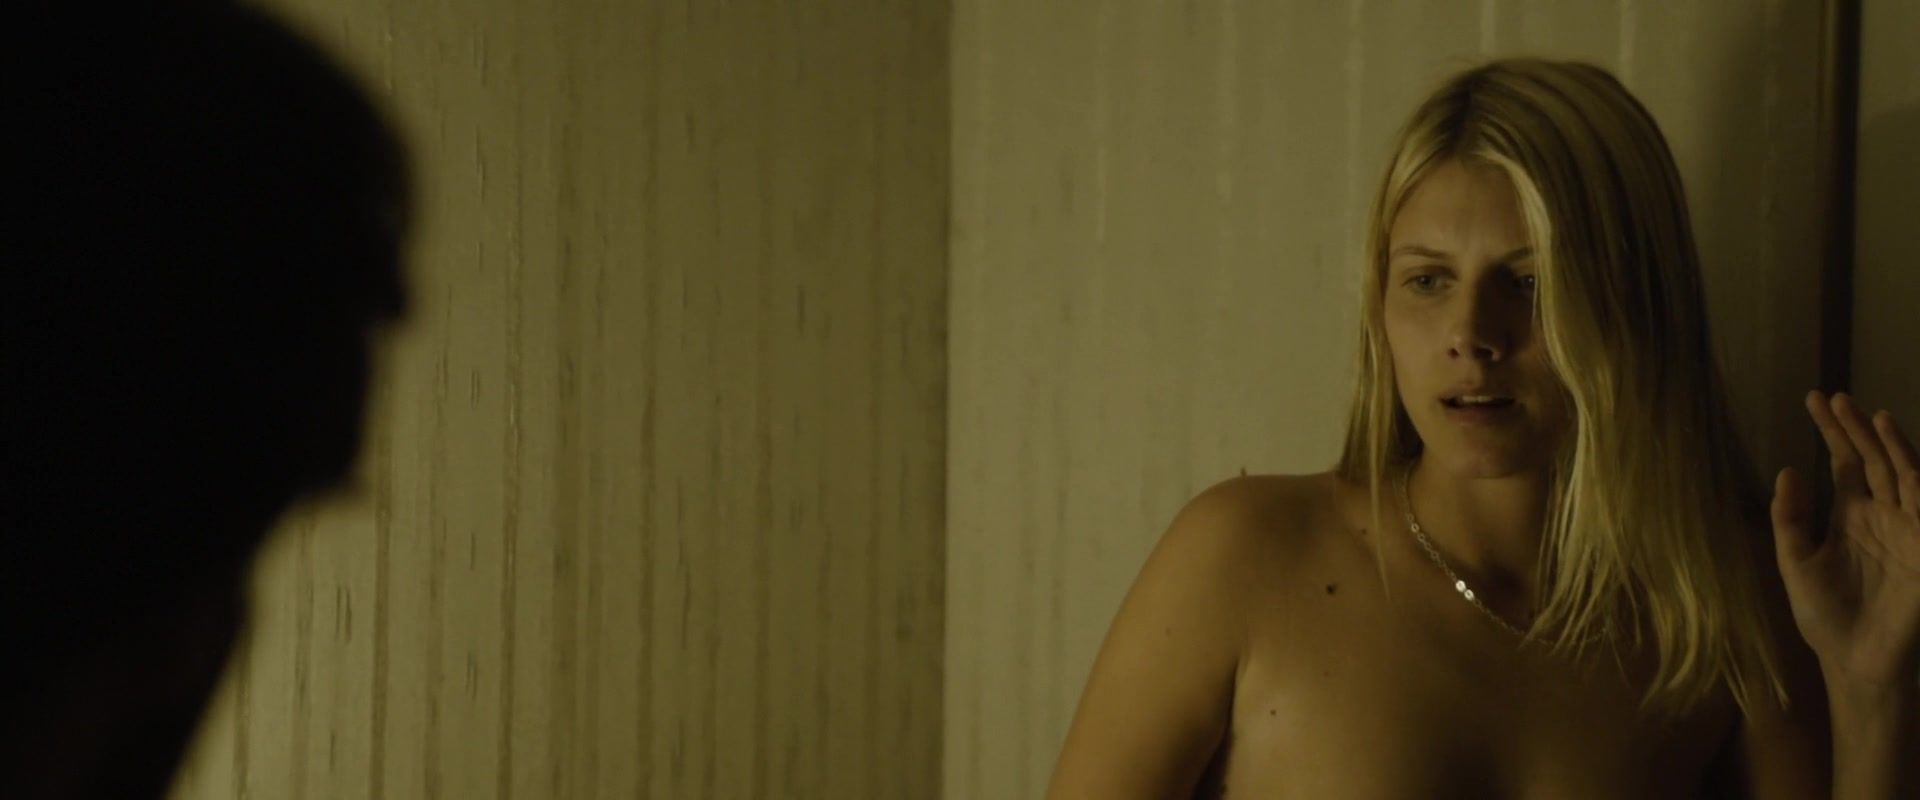 GayLoads Melanie Laurent nude - Enemy (2013) AllBoner